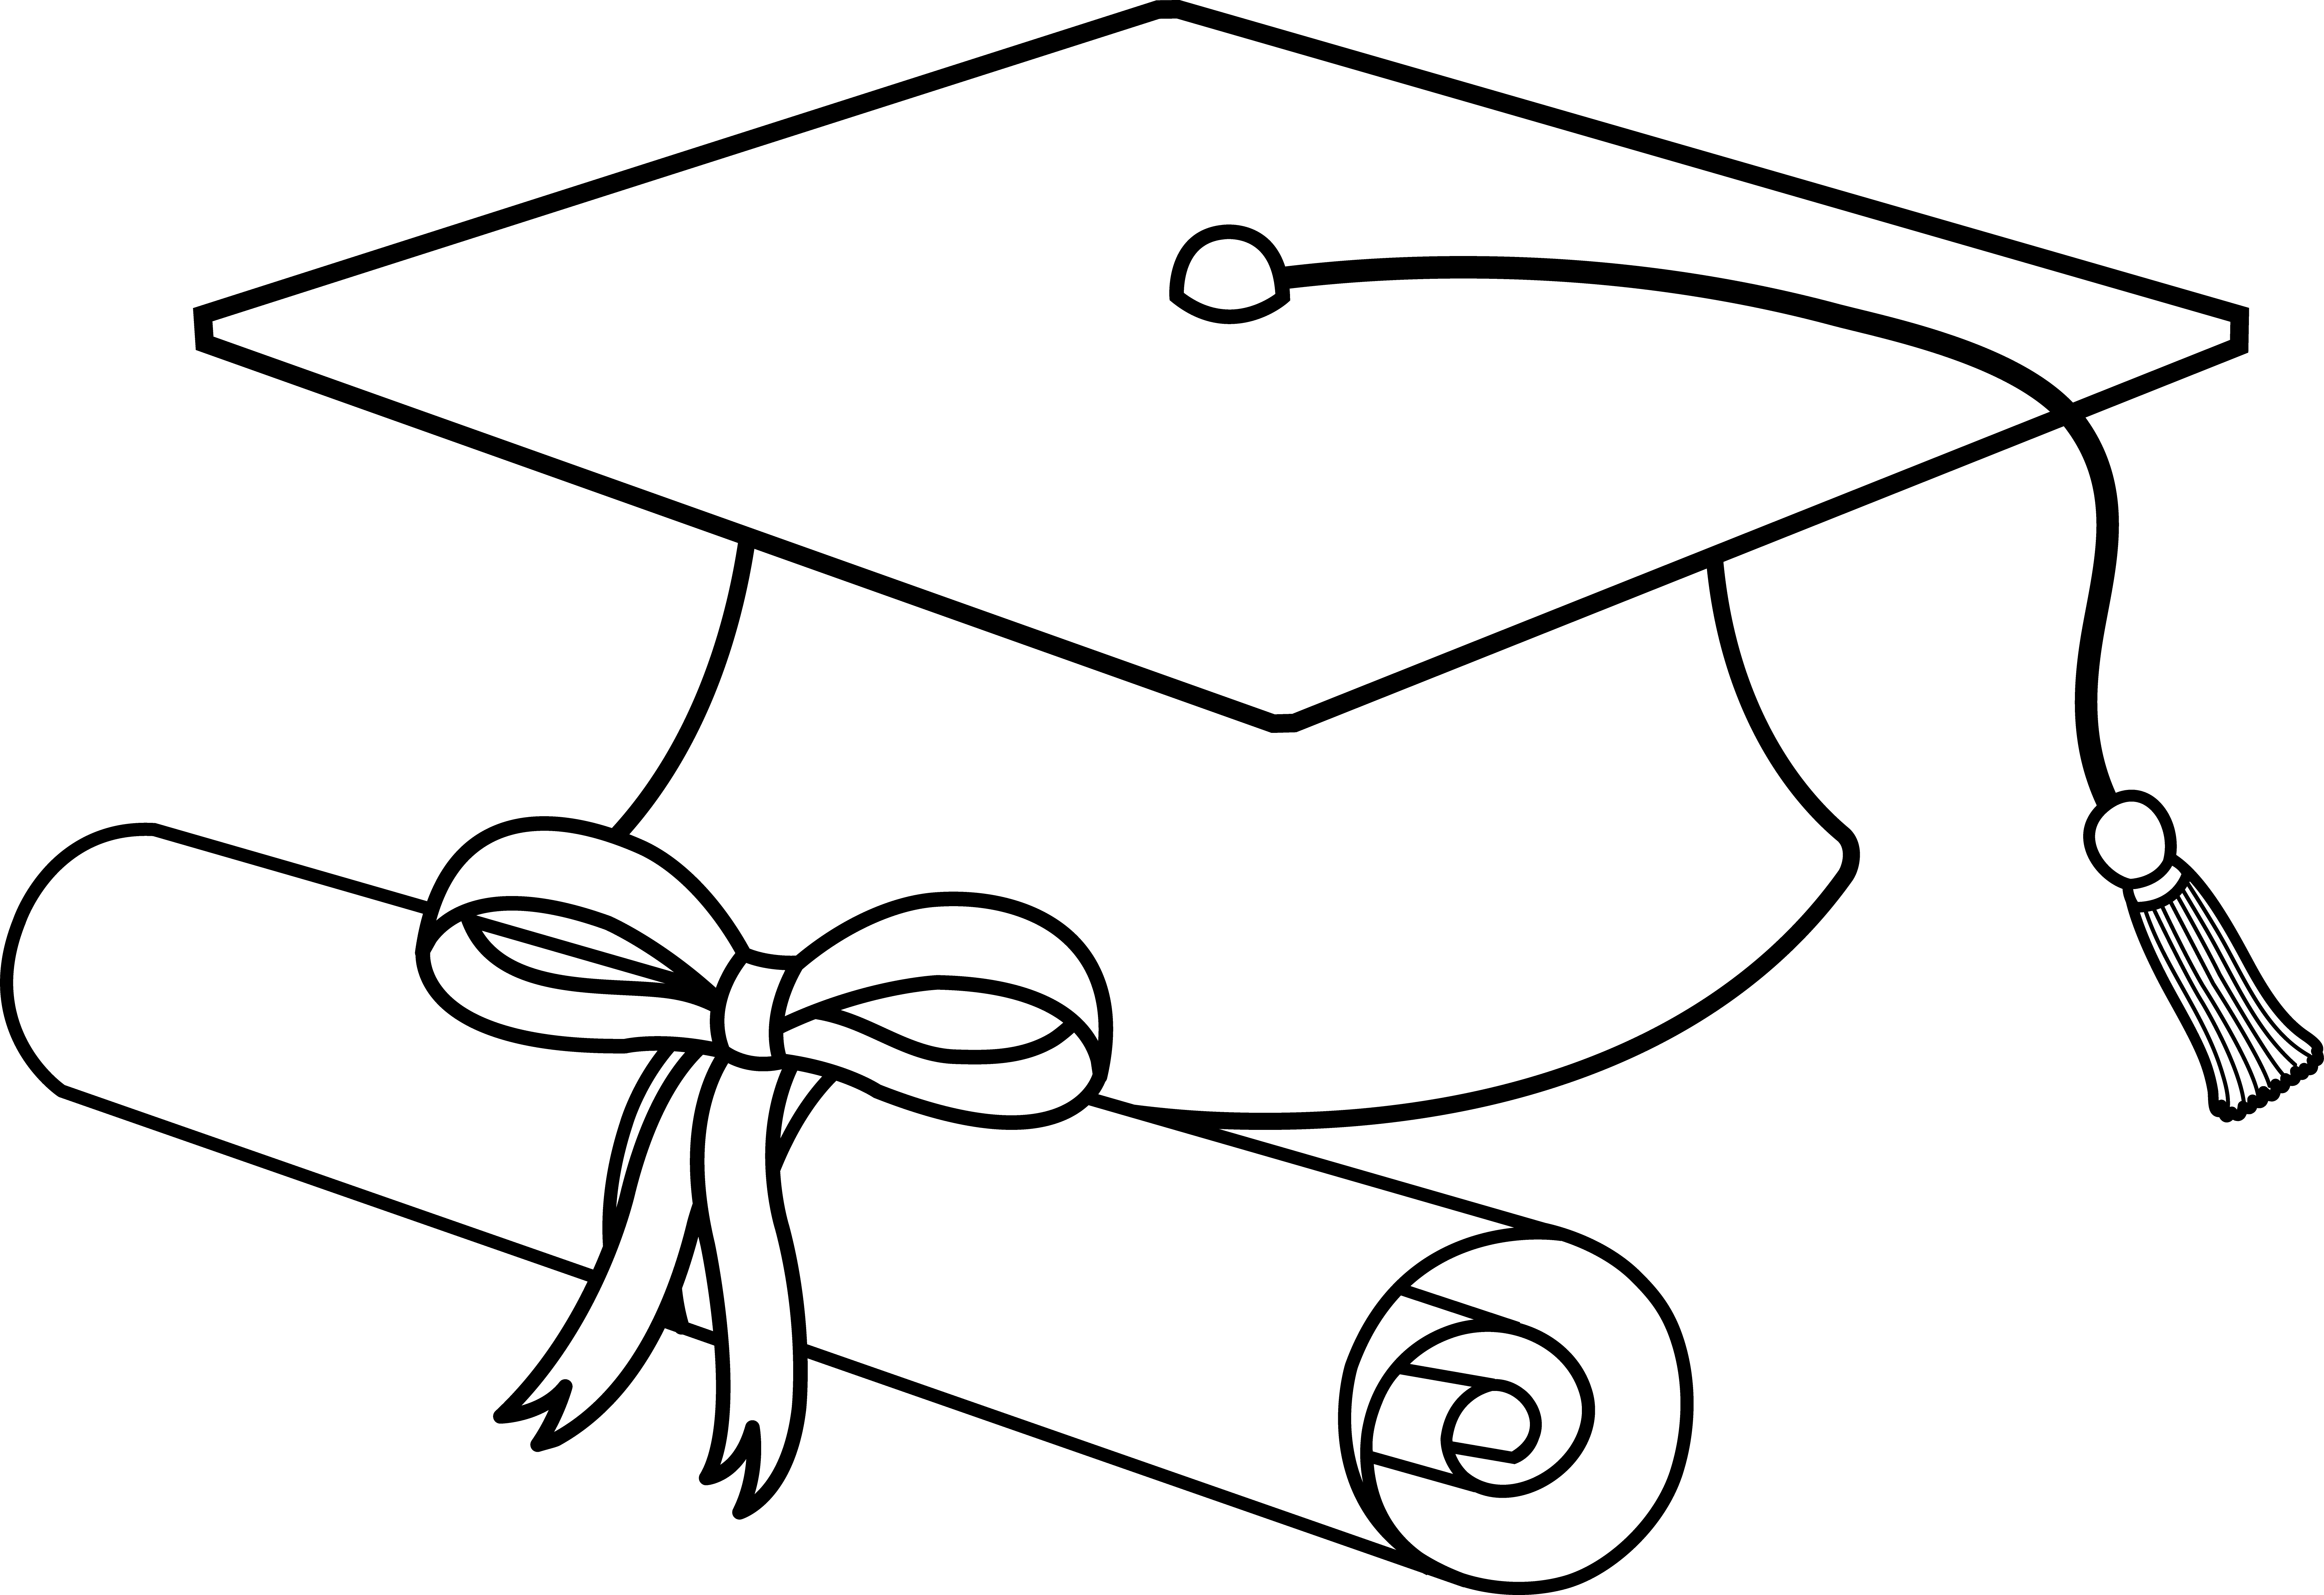 Graduation clipart prop. Flying caps clip art